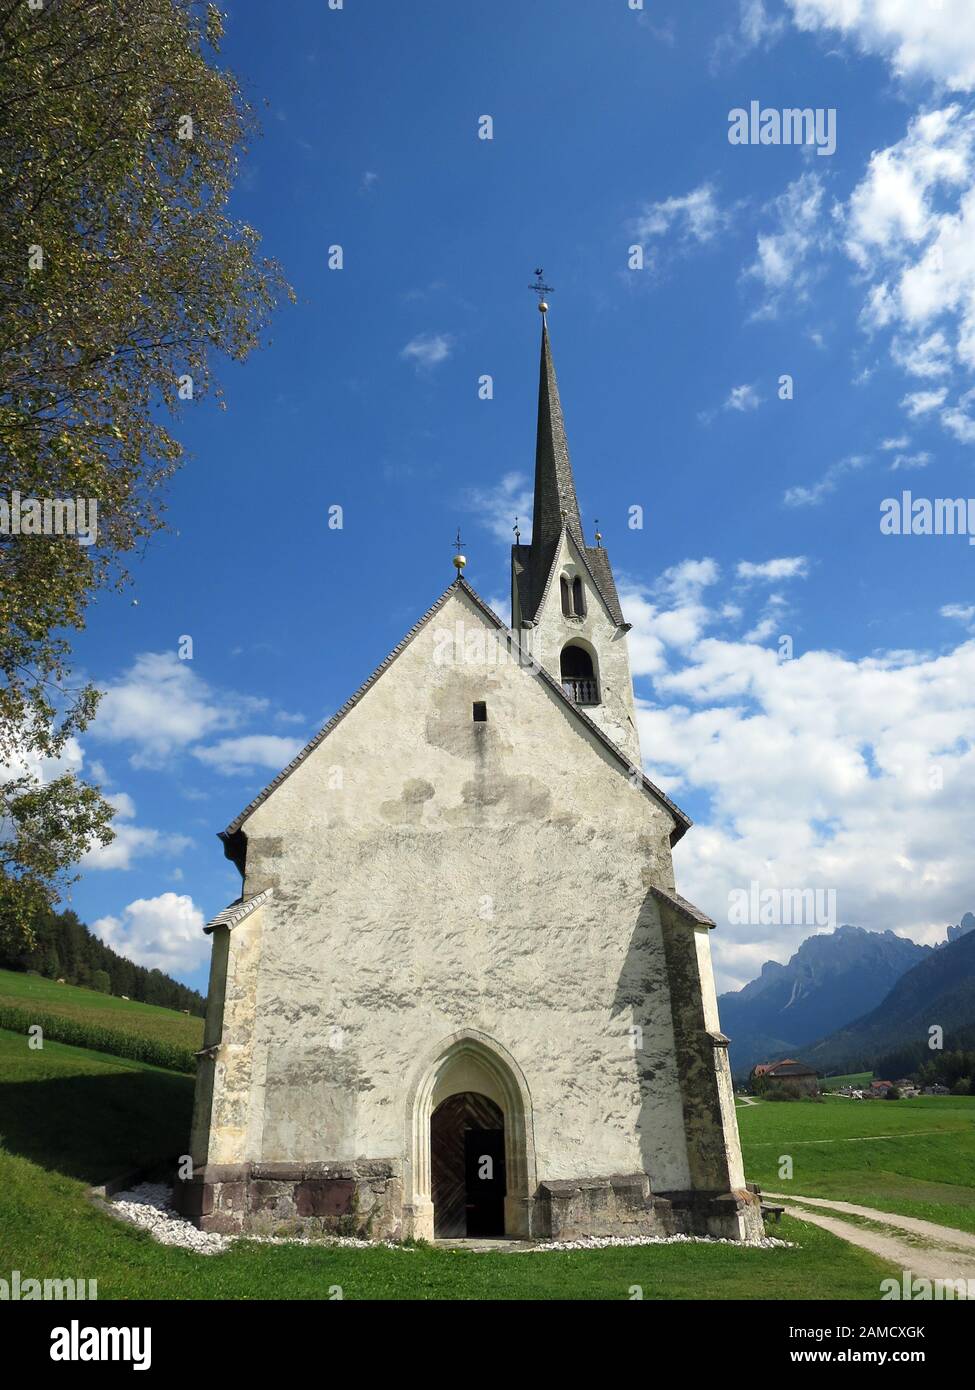 Plgrimage Eglise Saint Magdalena im Moos, Tyrol du Sud, Italie Banque D'Images